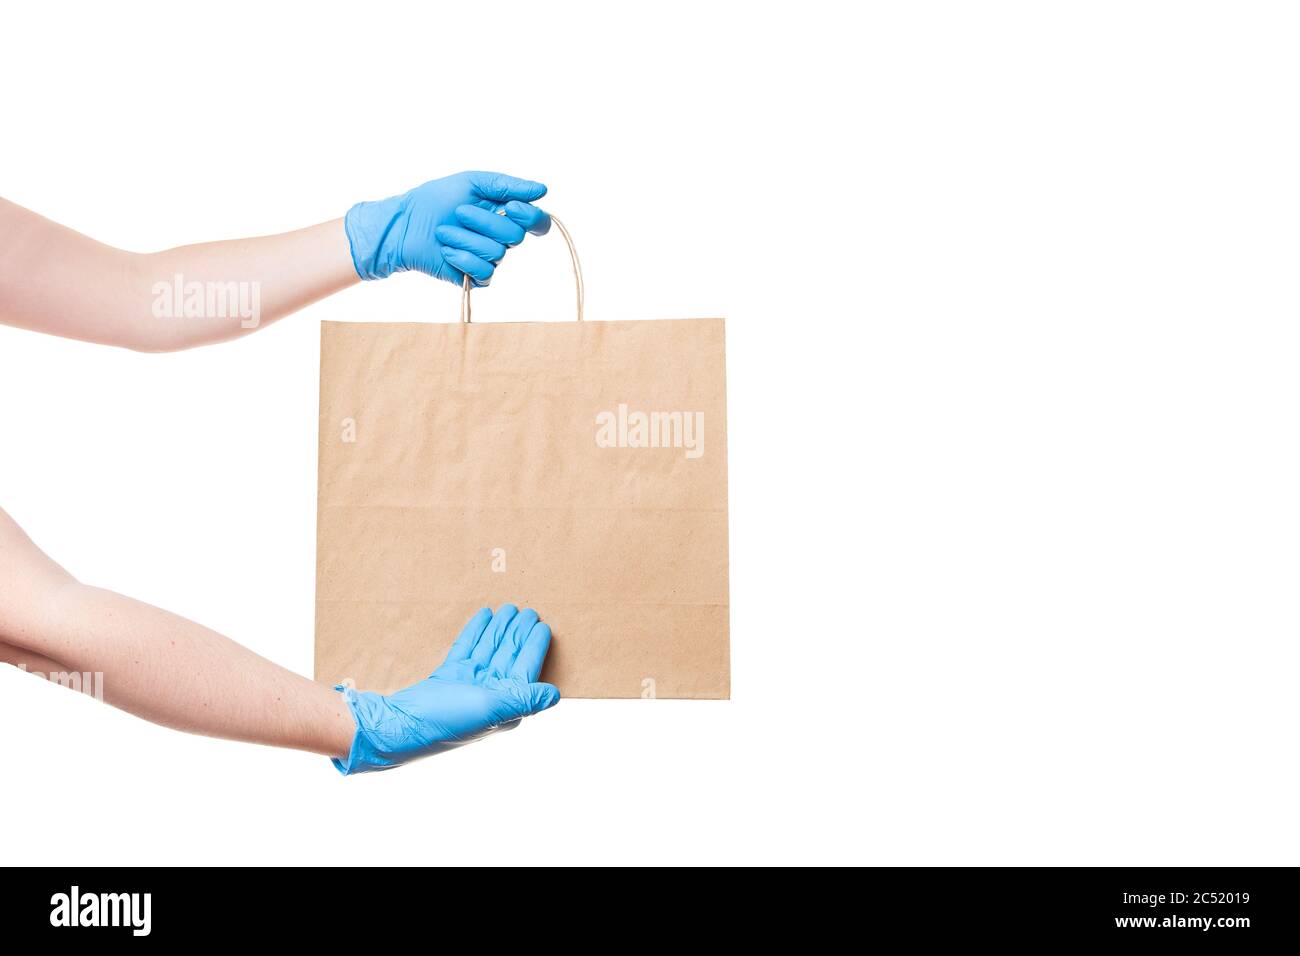 mains dans des gants stériles d'un messager pour la livraison sécuritaire de nourriture dans un point de colis de l'artisanat écologique avec une main à un endroit vide pour un logo, mock Banque D'Images